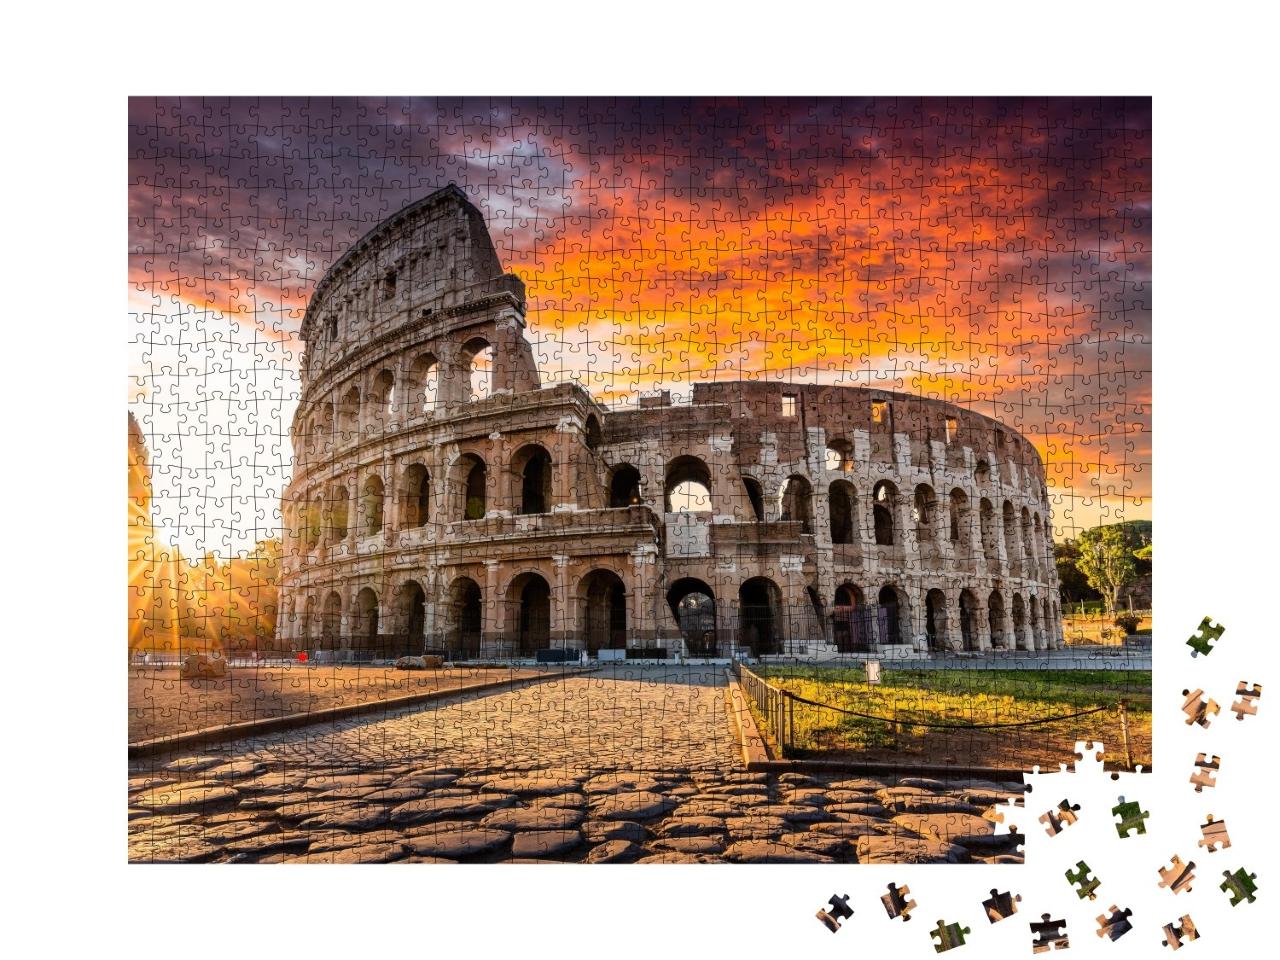 Puzzle de 1000 pièces « Colisée ou Coliseum au lever du soleil, Rome »